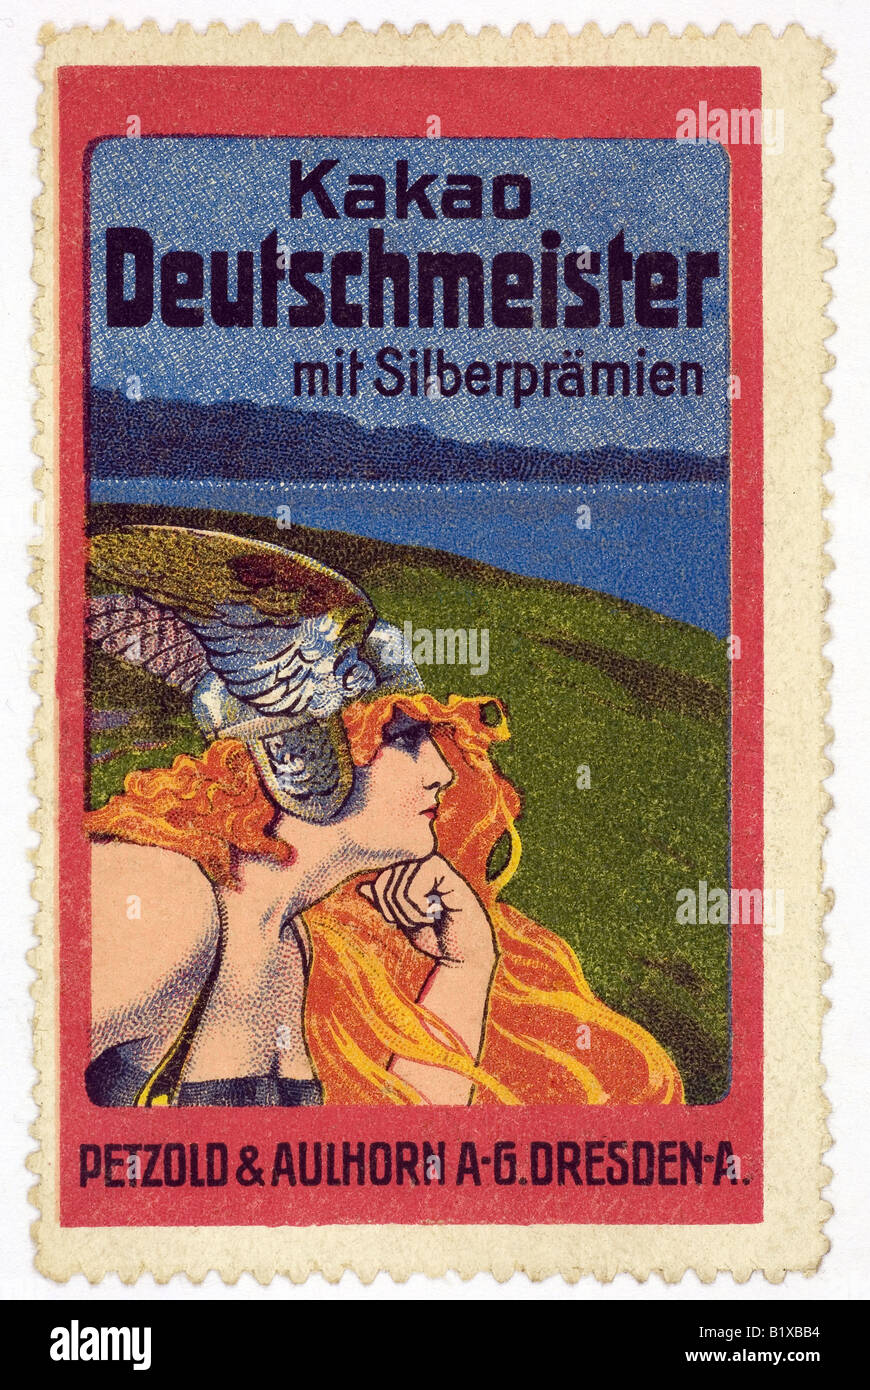 trading stamp Kakao Deutschmeister mit Silberprämien Stock Photo